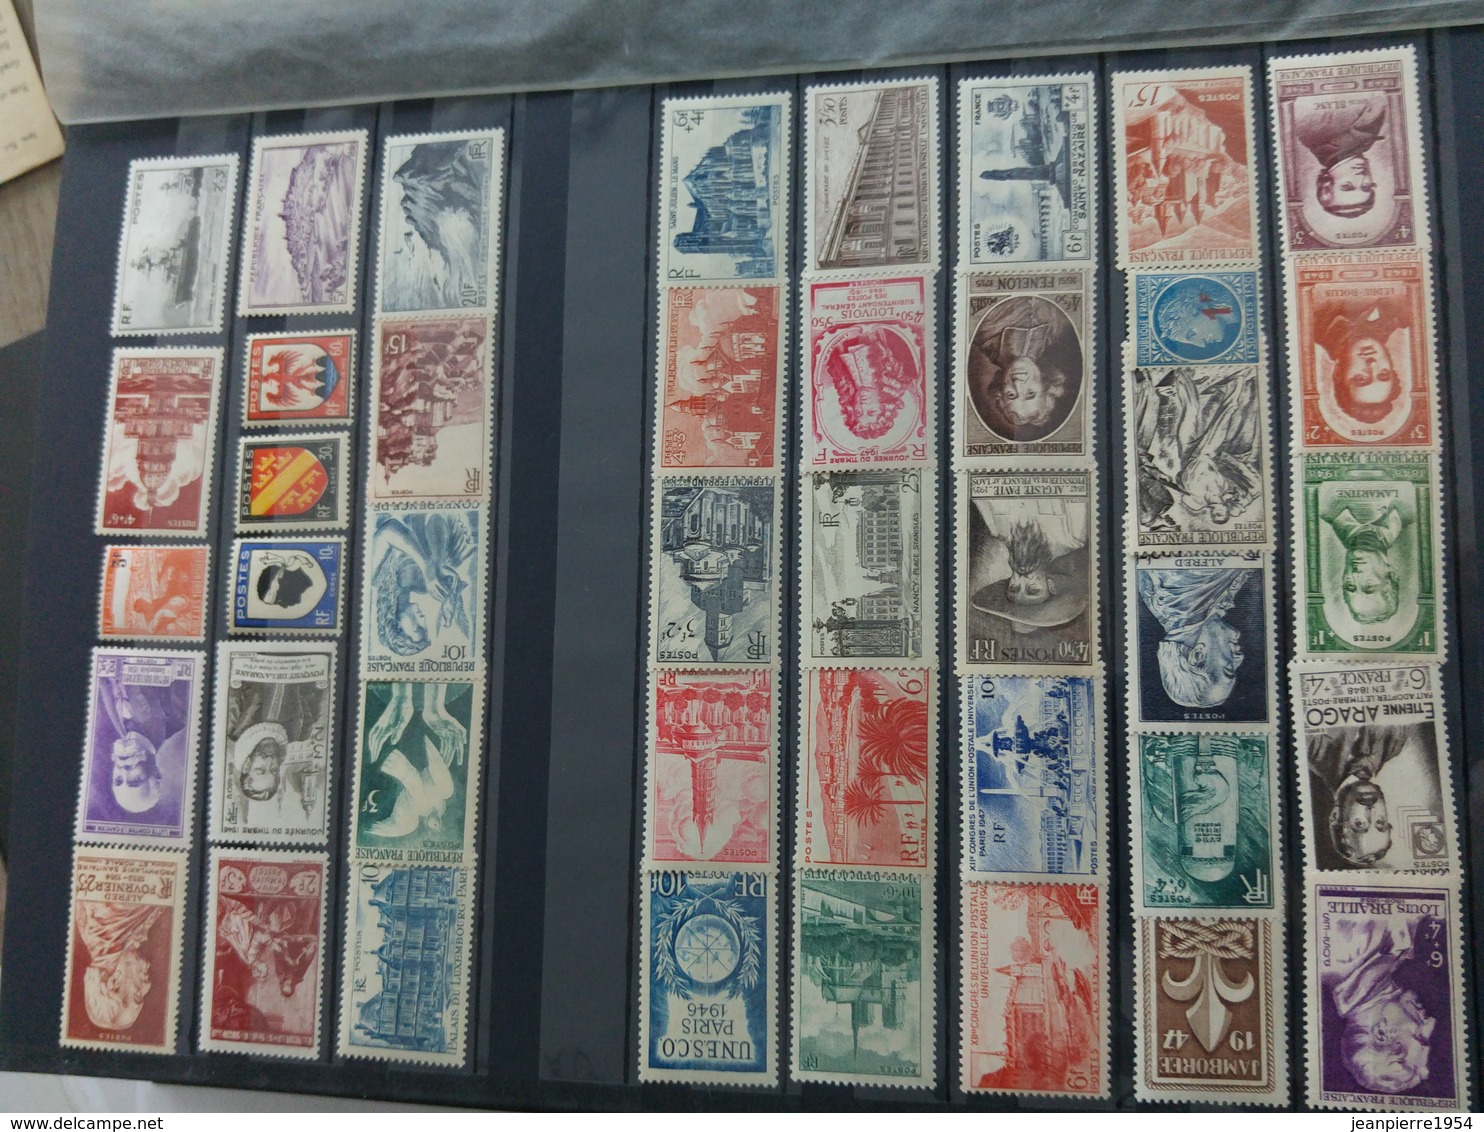 album timbres français neuf obliteres grosse cote